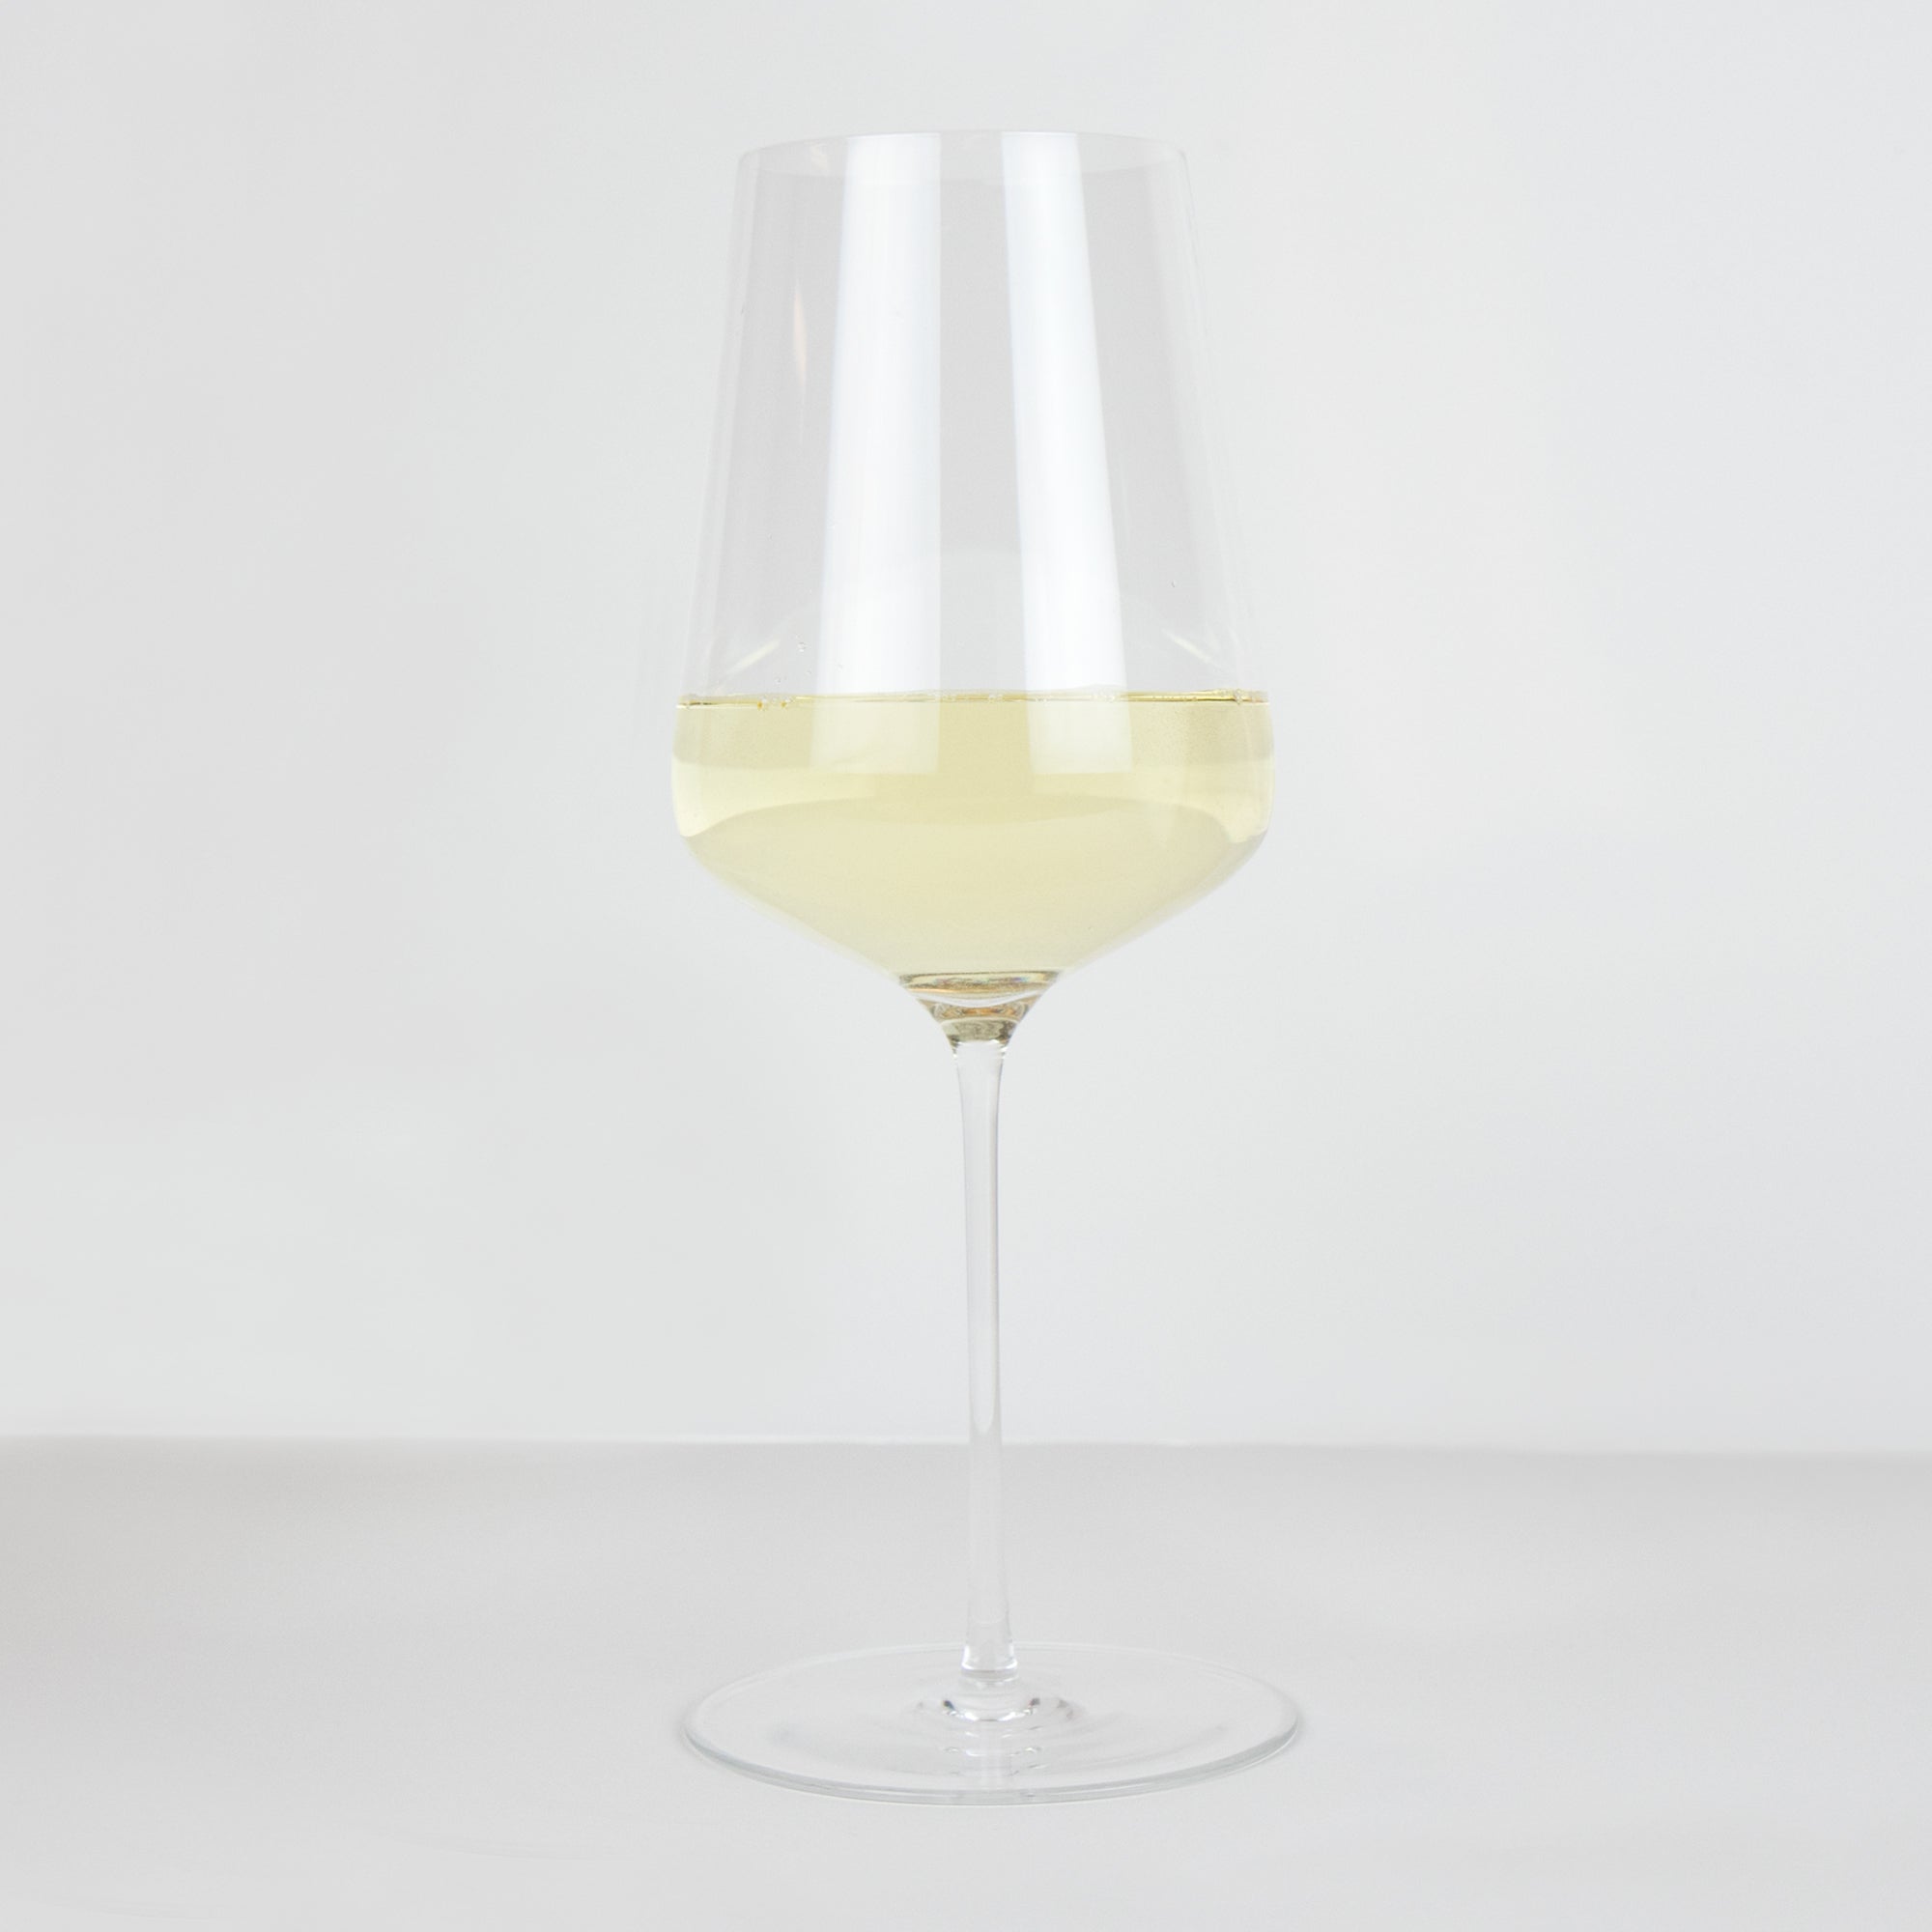 Zalto Universal White Wine Glass